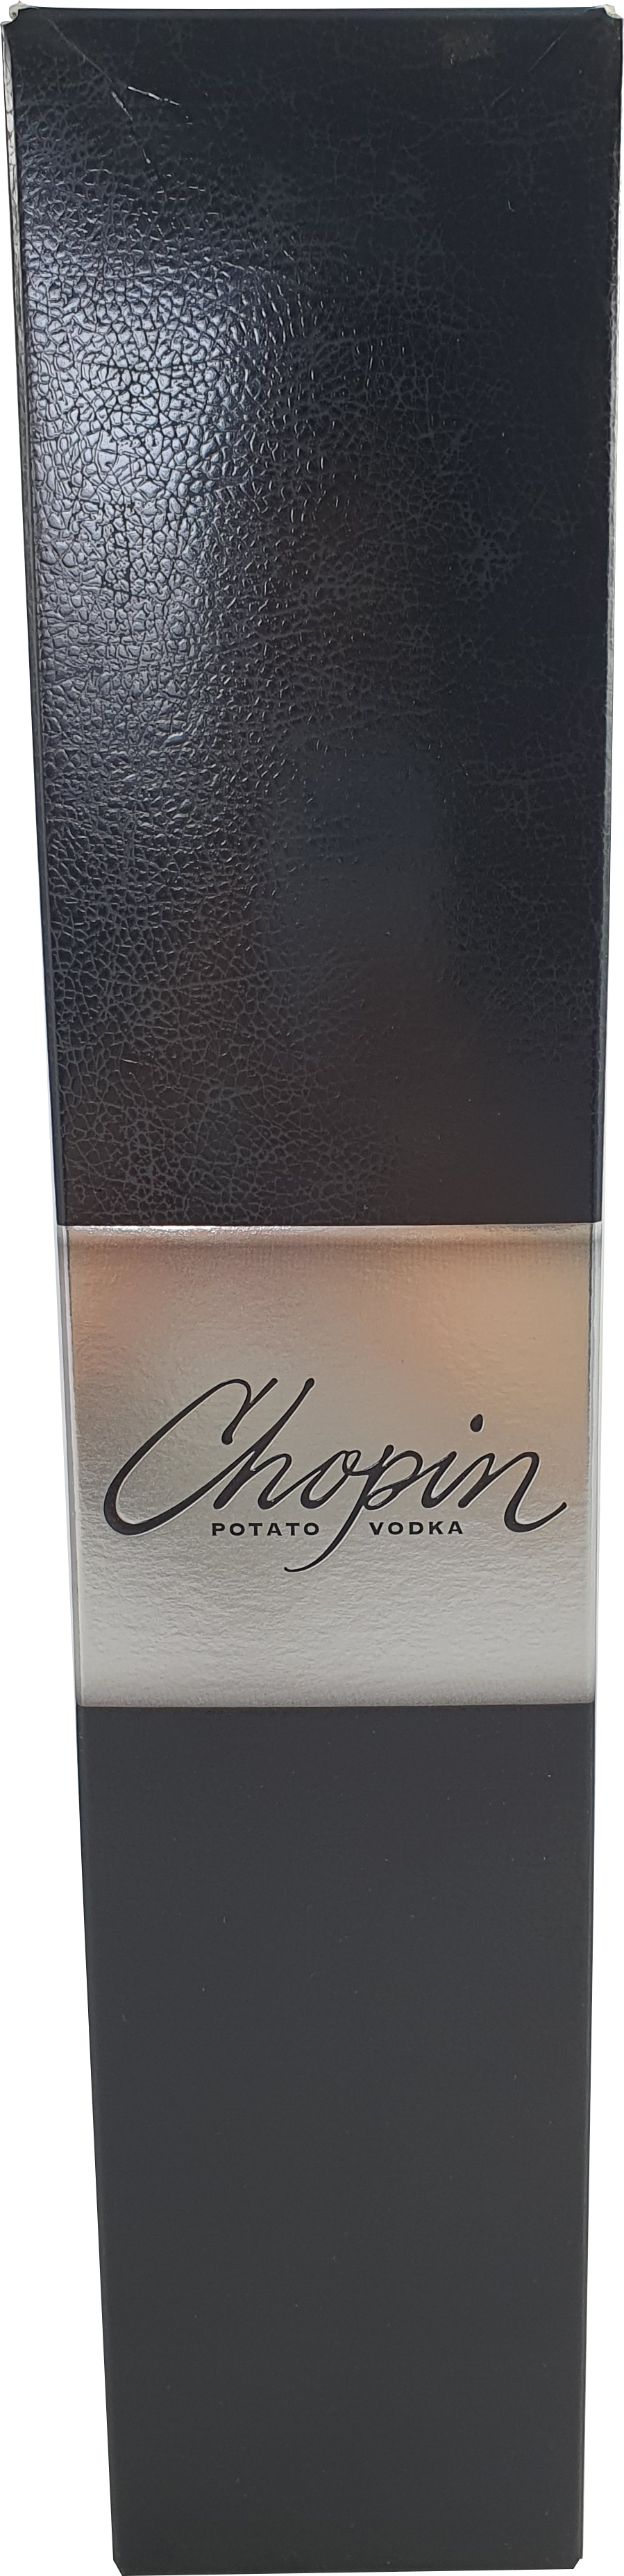 Chopin Potato Vodka 40% 